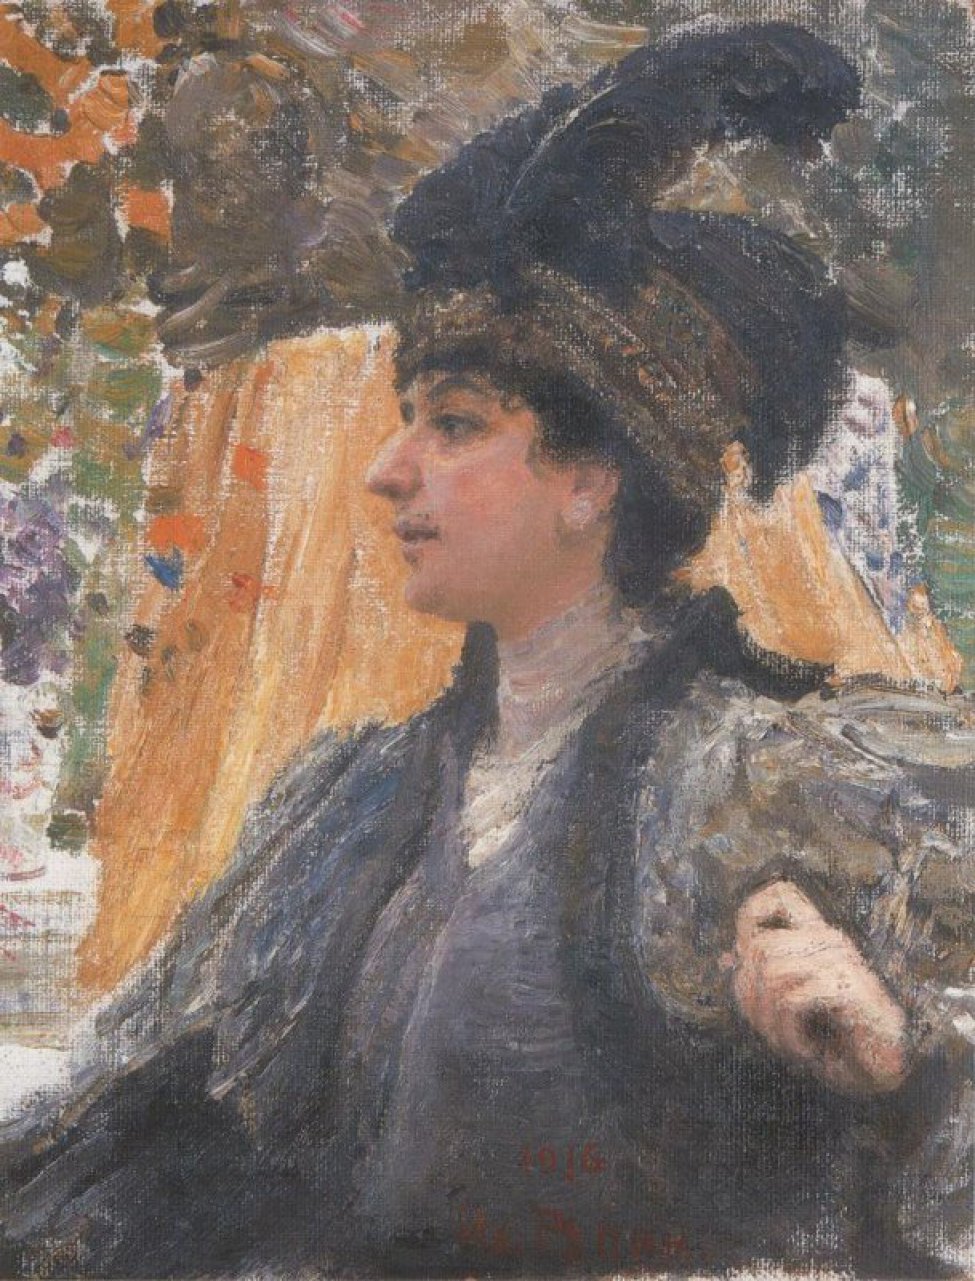 Изображена погрудно женщина в повороте влево, в шляпе с двумя большими перьями; рука ее поднята к груди. На фоне желтая ткань.